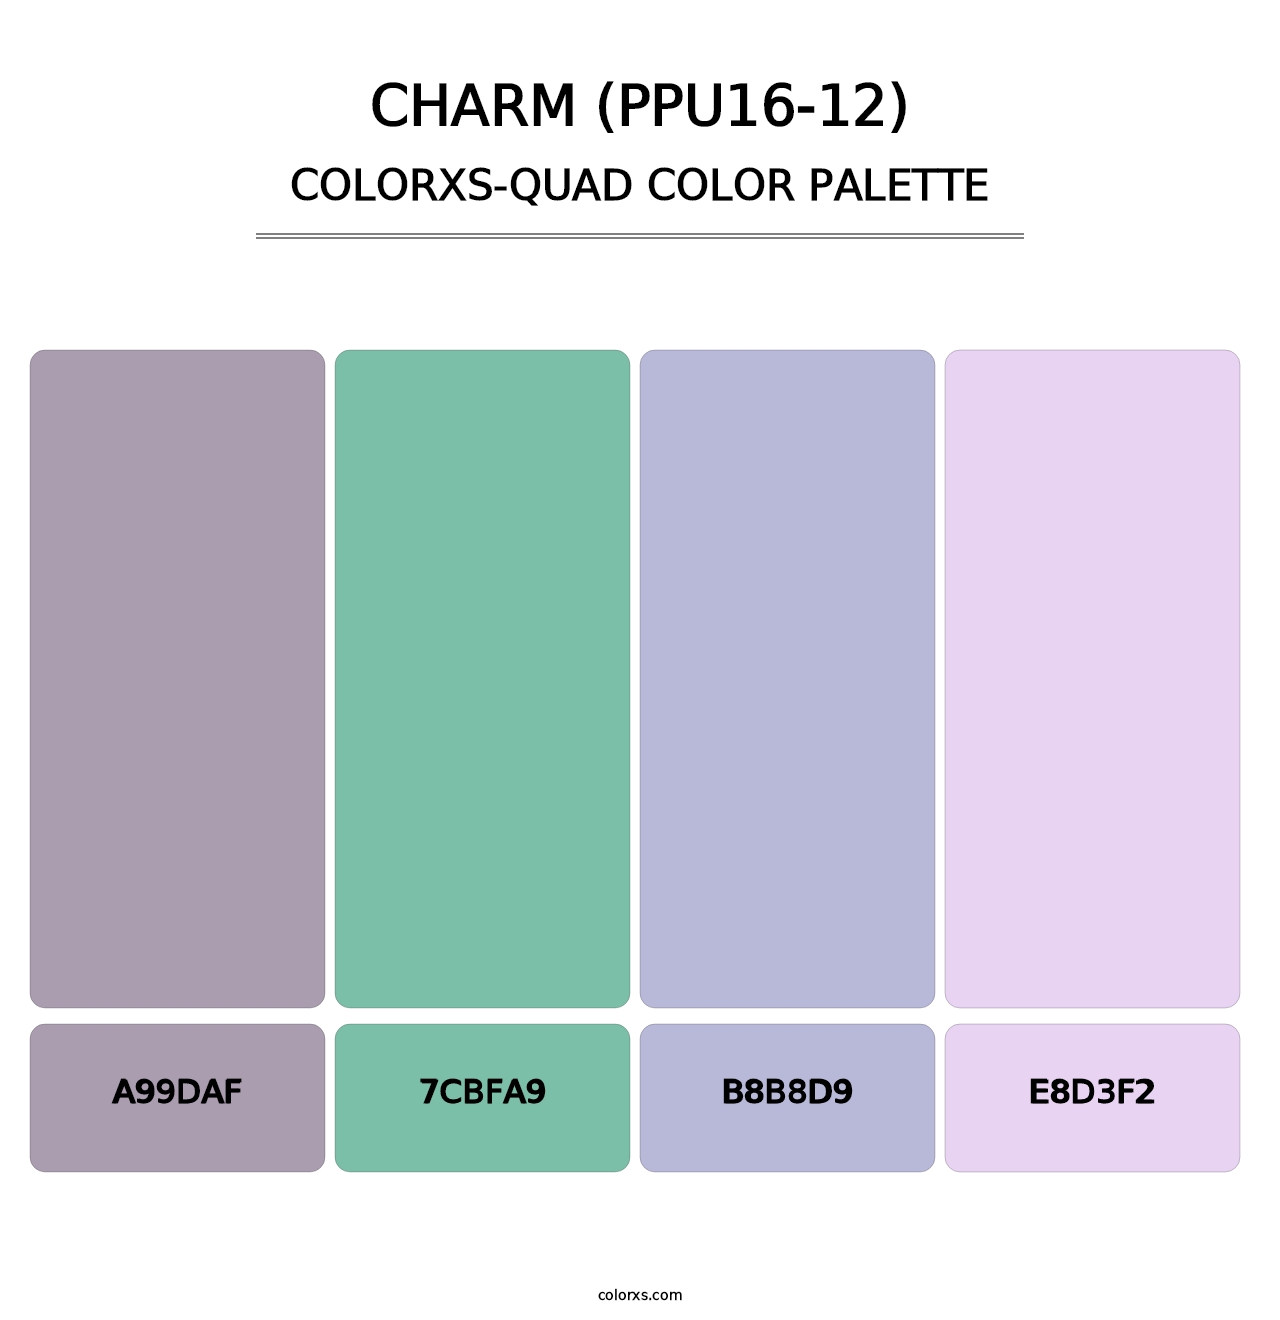 Charm (PPU16-12) - Colorxs Quad Palette